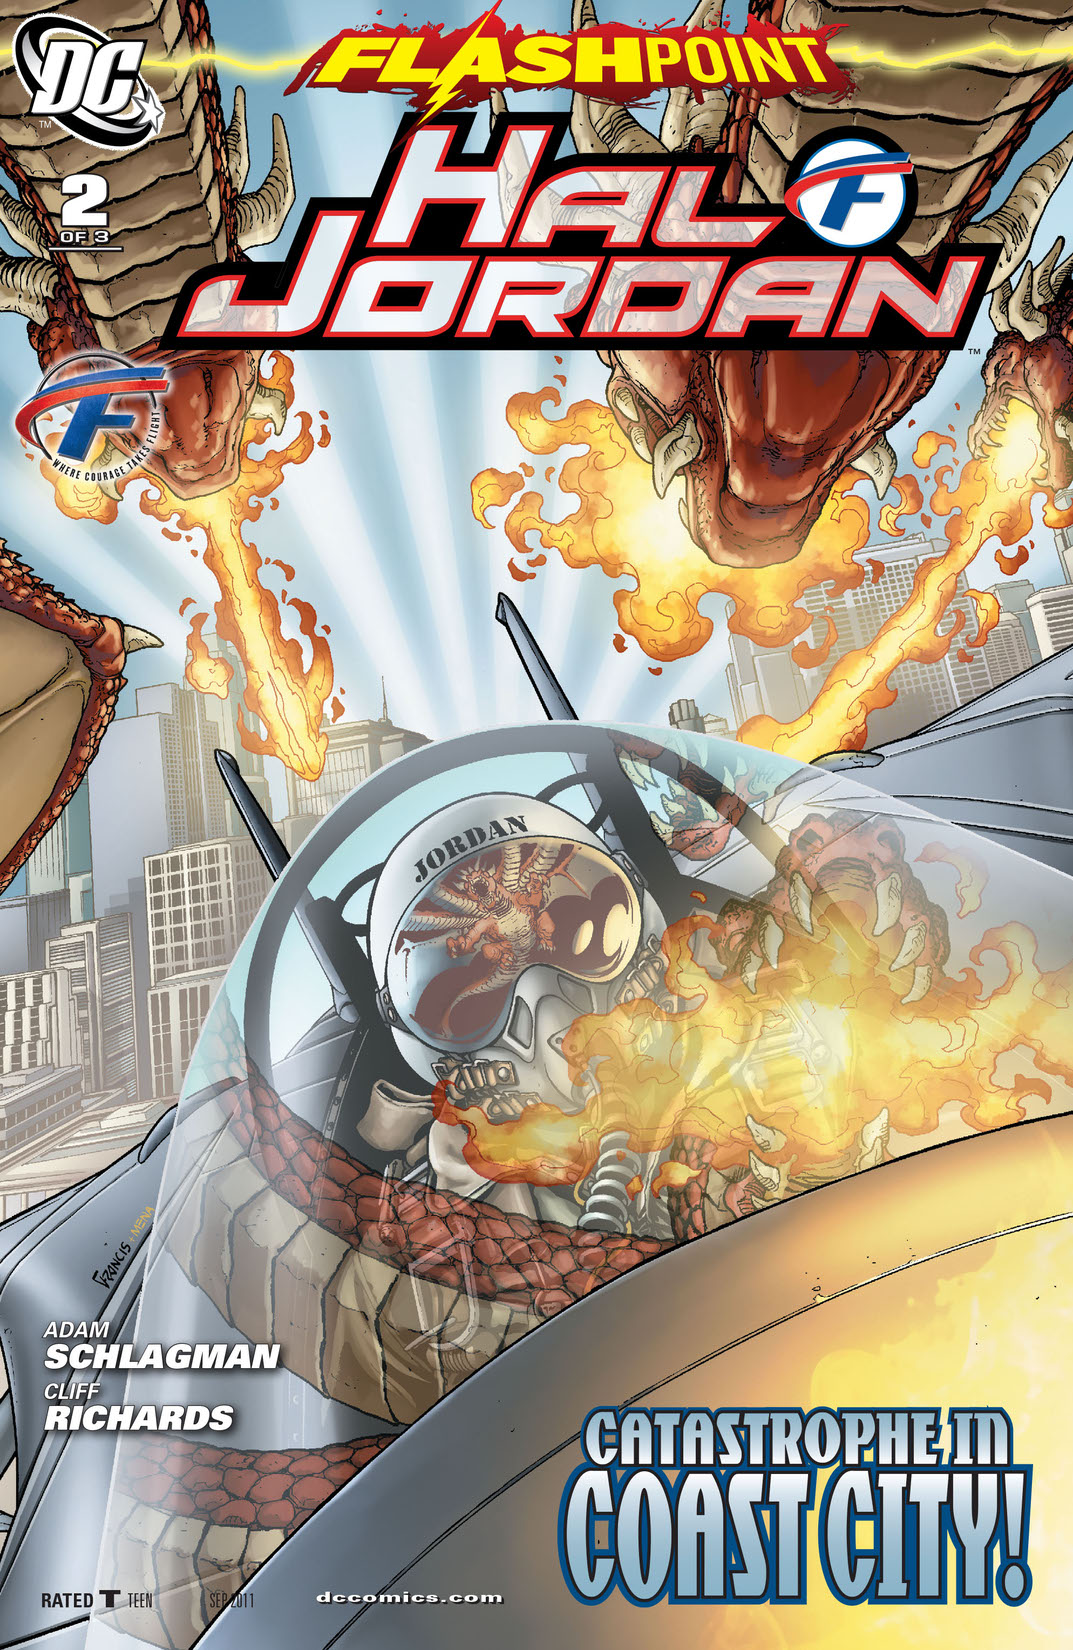 Flashpoint: Hal Jordan #2 preview images